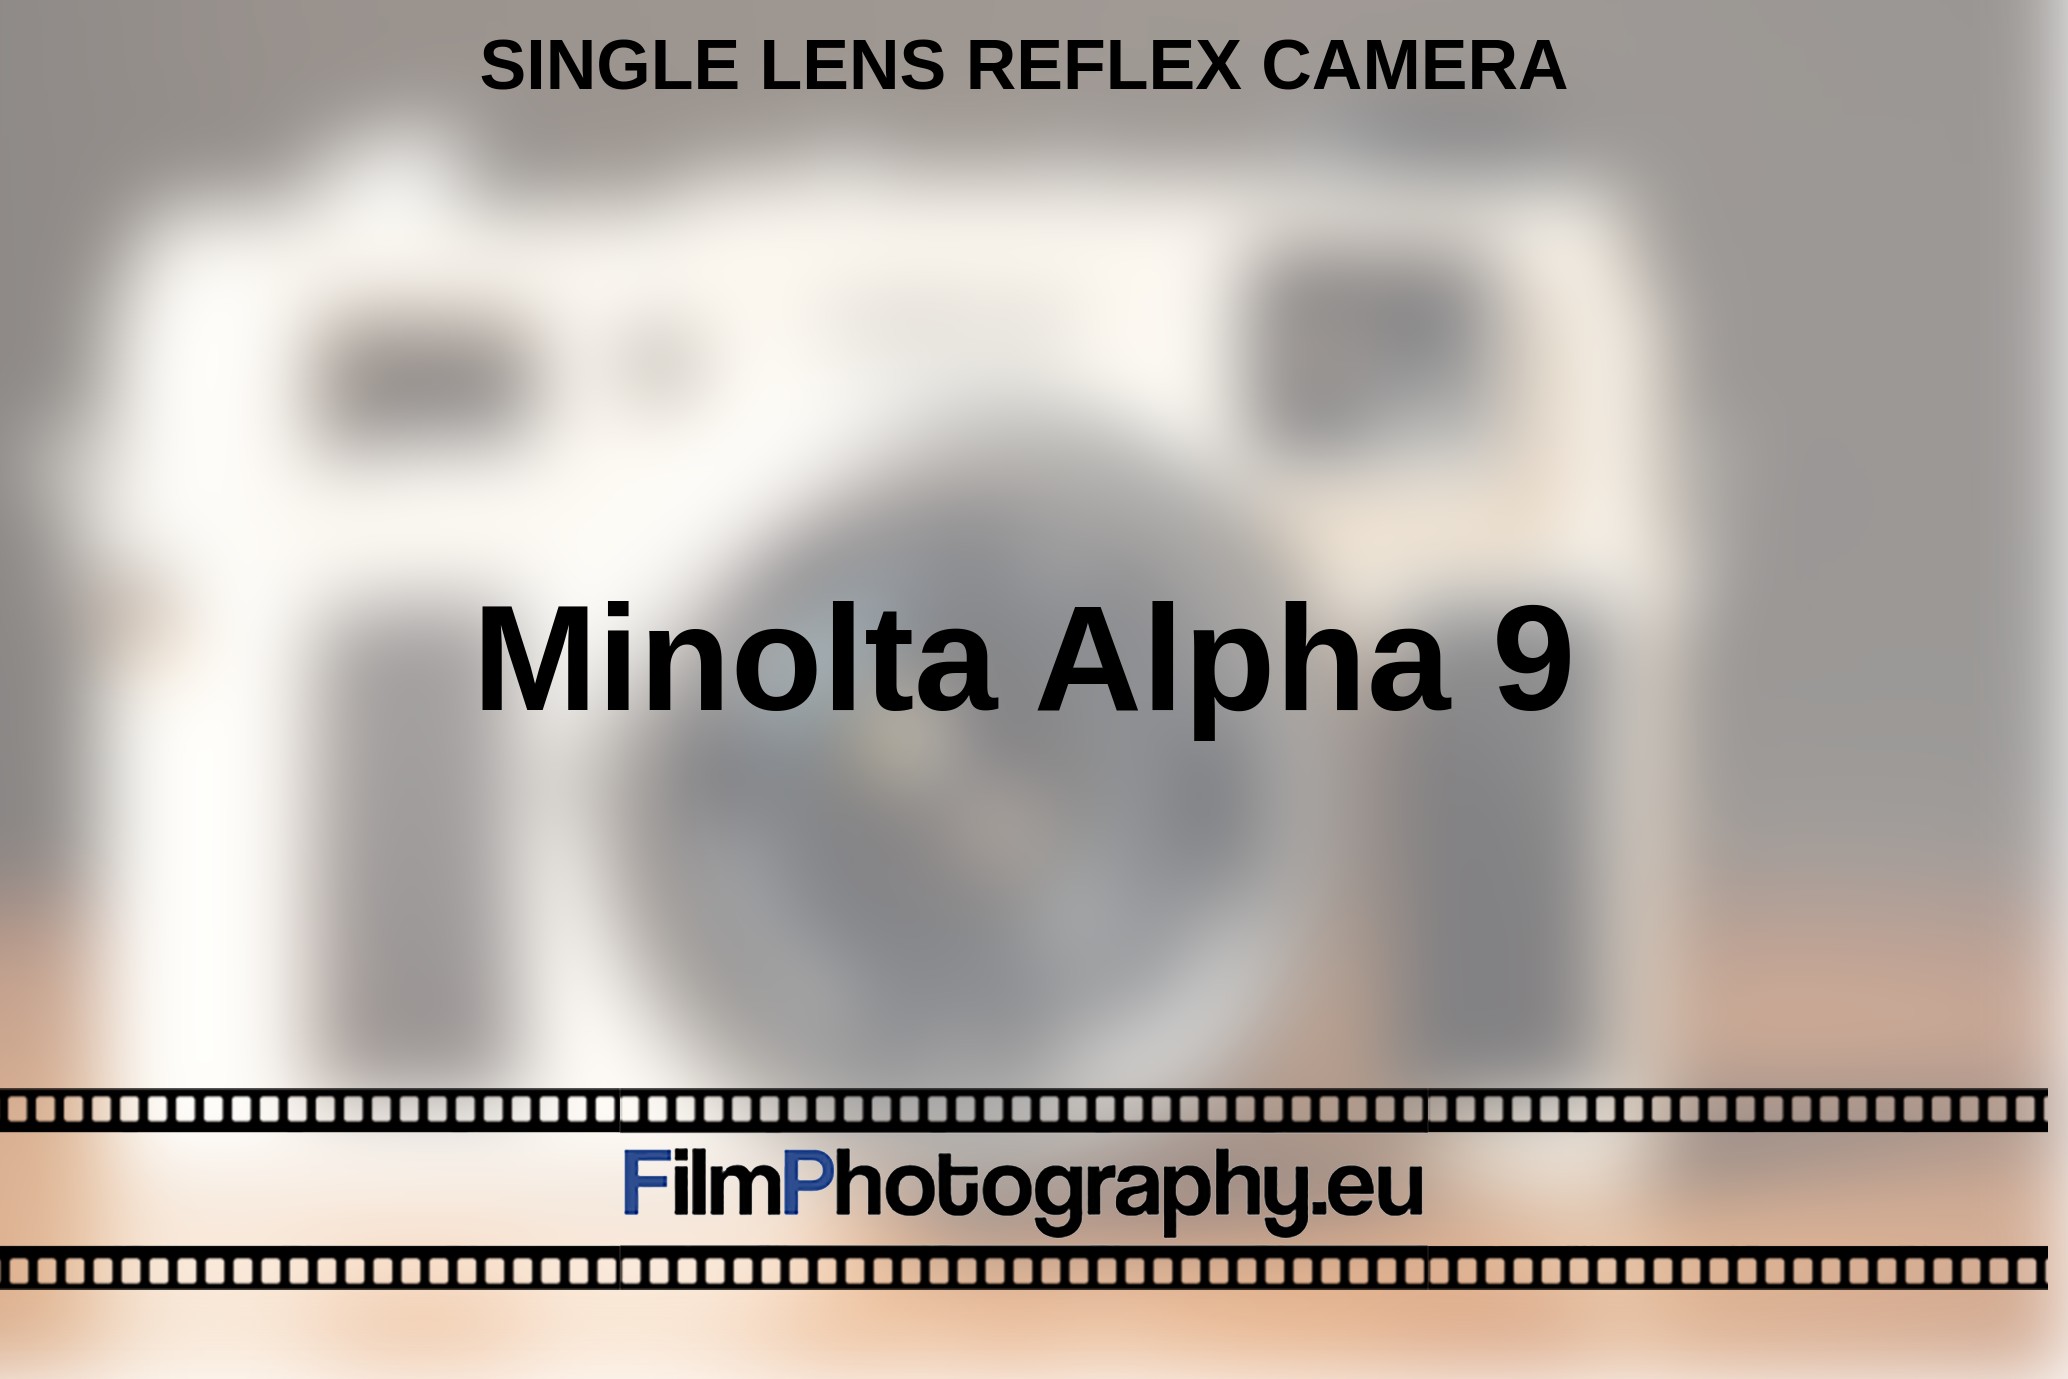 Minolta-Alpha-9-single-lens-reflex-camera-bnv.jpg